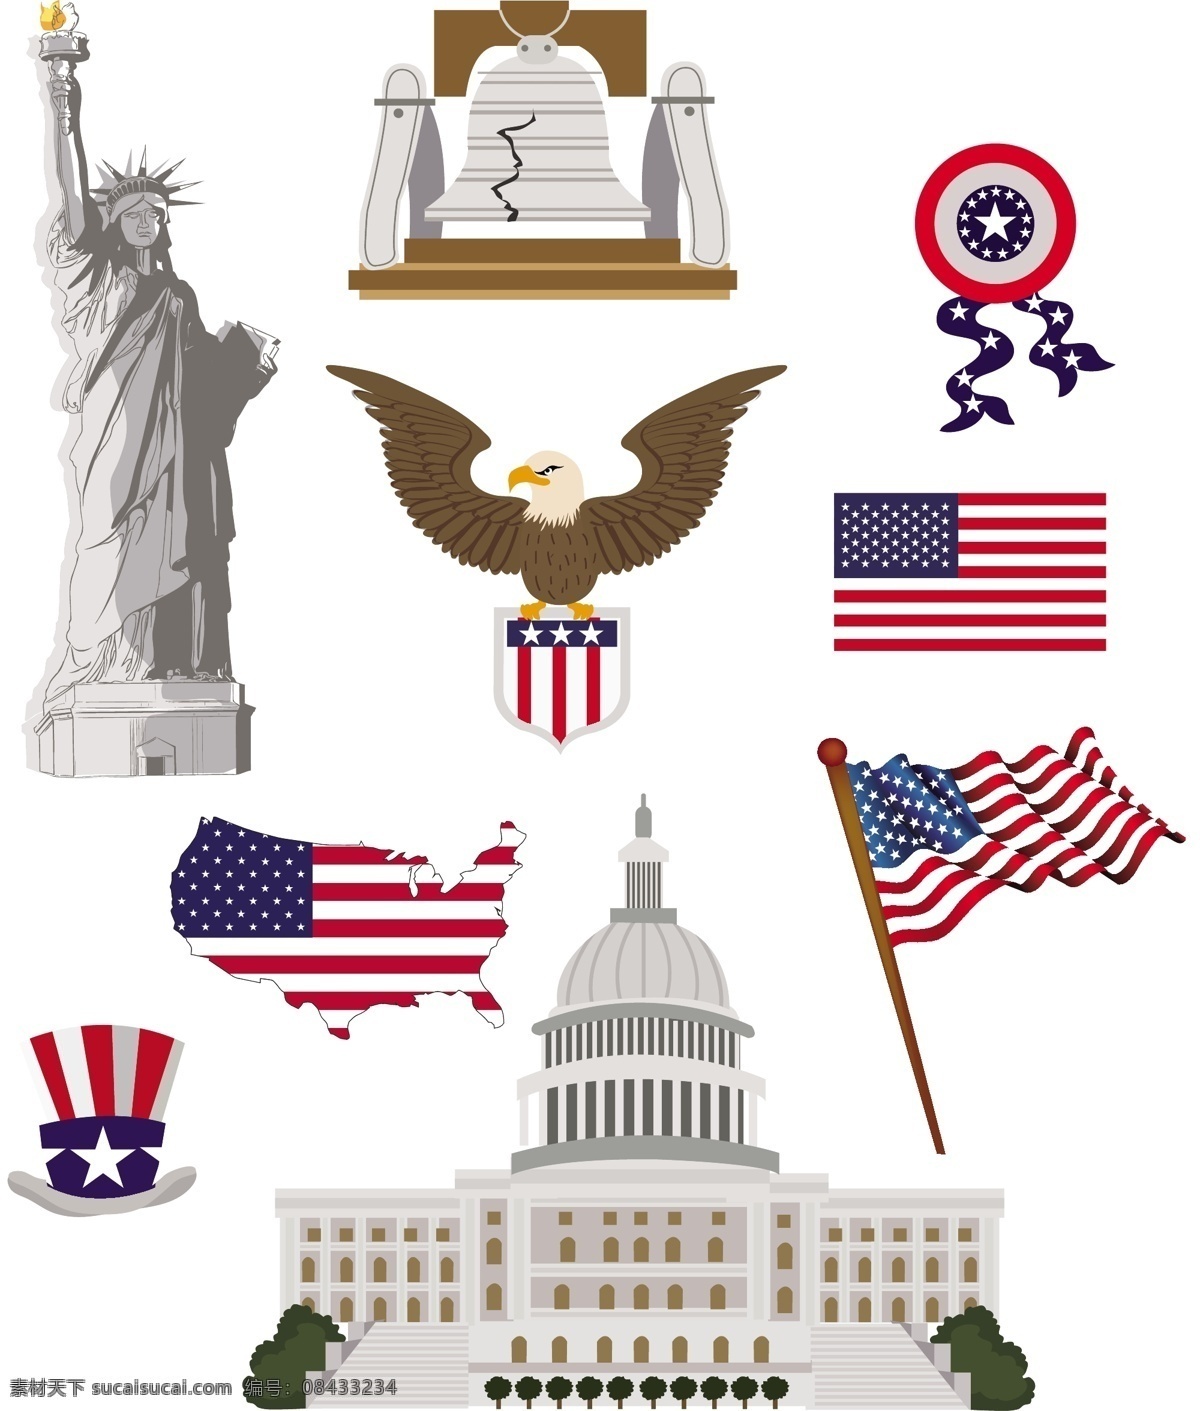 美国文化 矢量 美国文化素材 美国文化矢量 美国素材 美国国旗 自由女神像 美国标志 美国 美国白宫 共享设计矢量 文化艺术